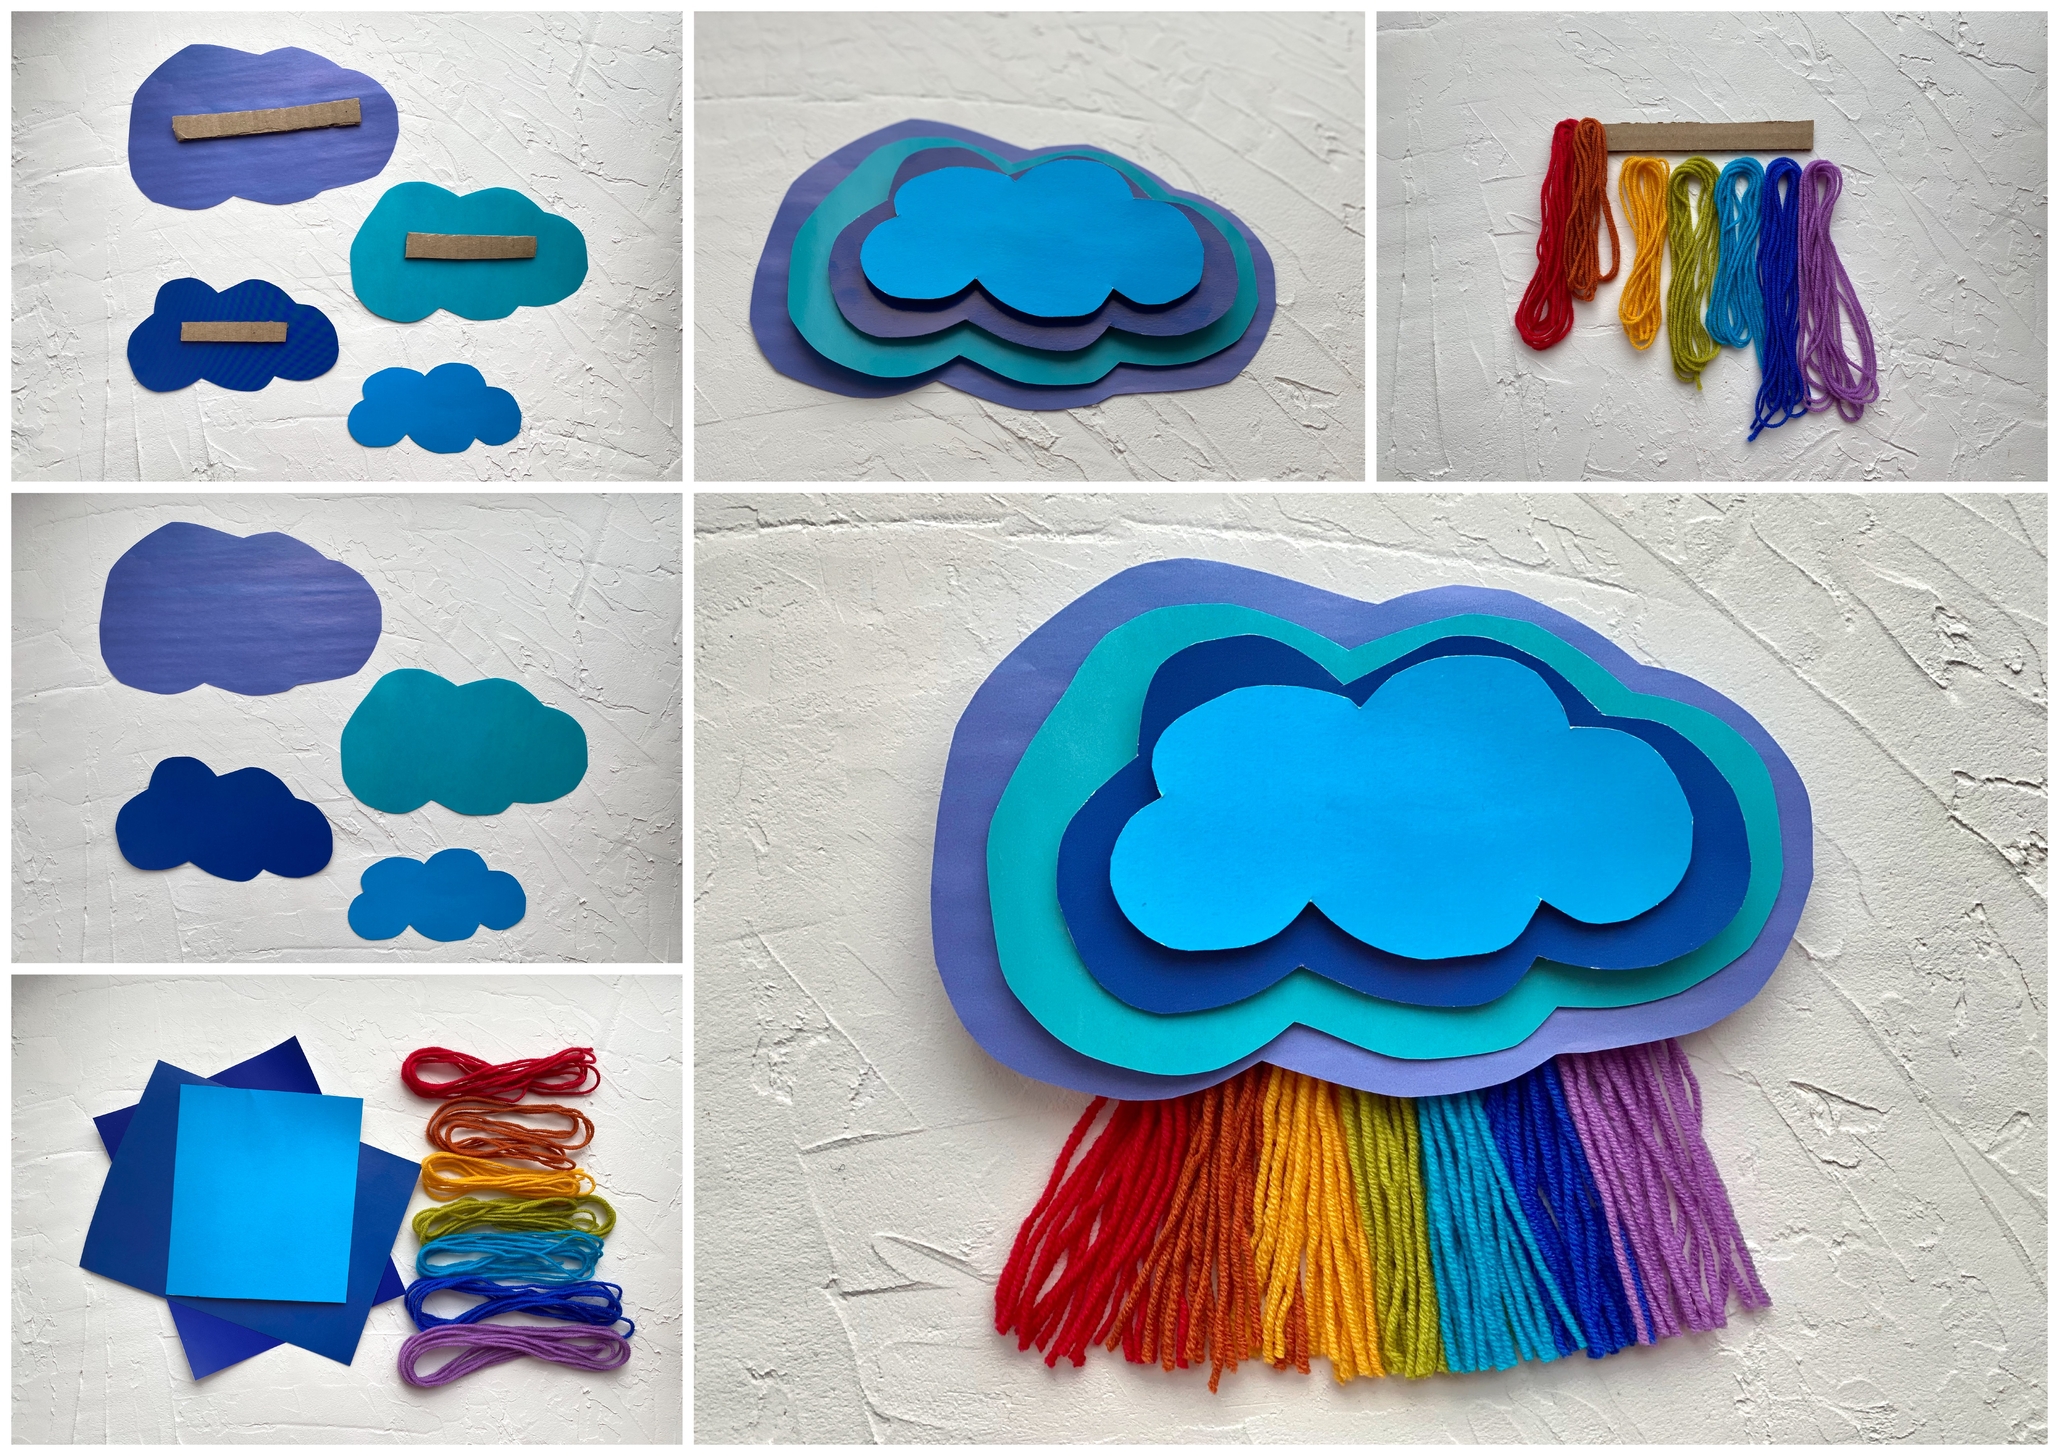 Tęczowa chmura zabawa plastyczna dla dzieci